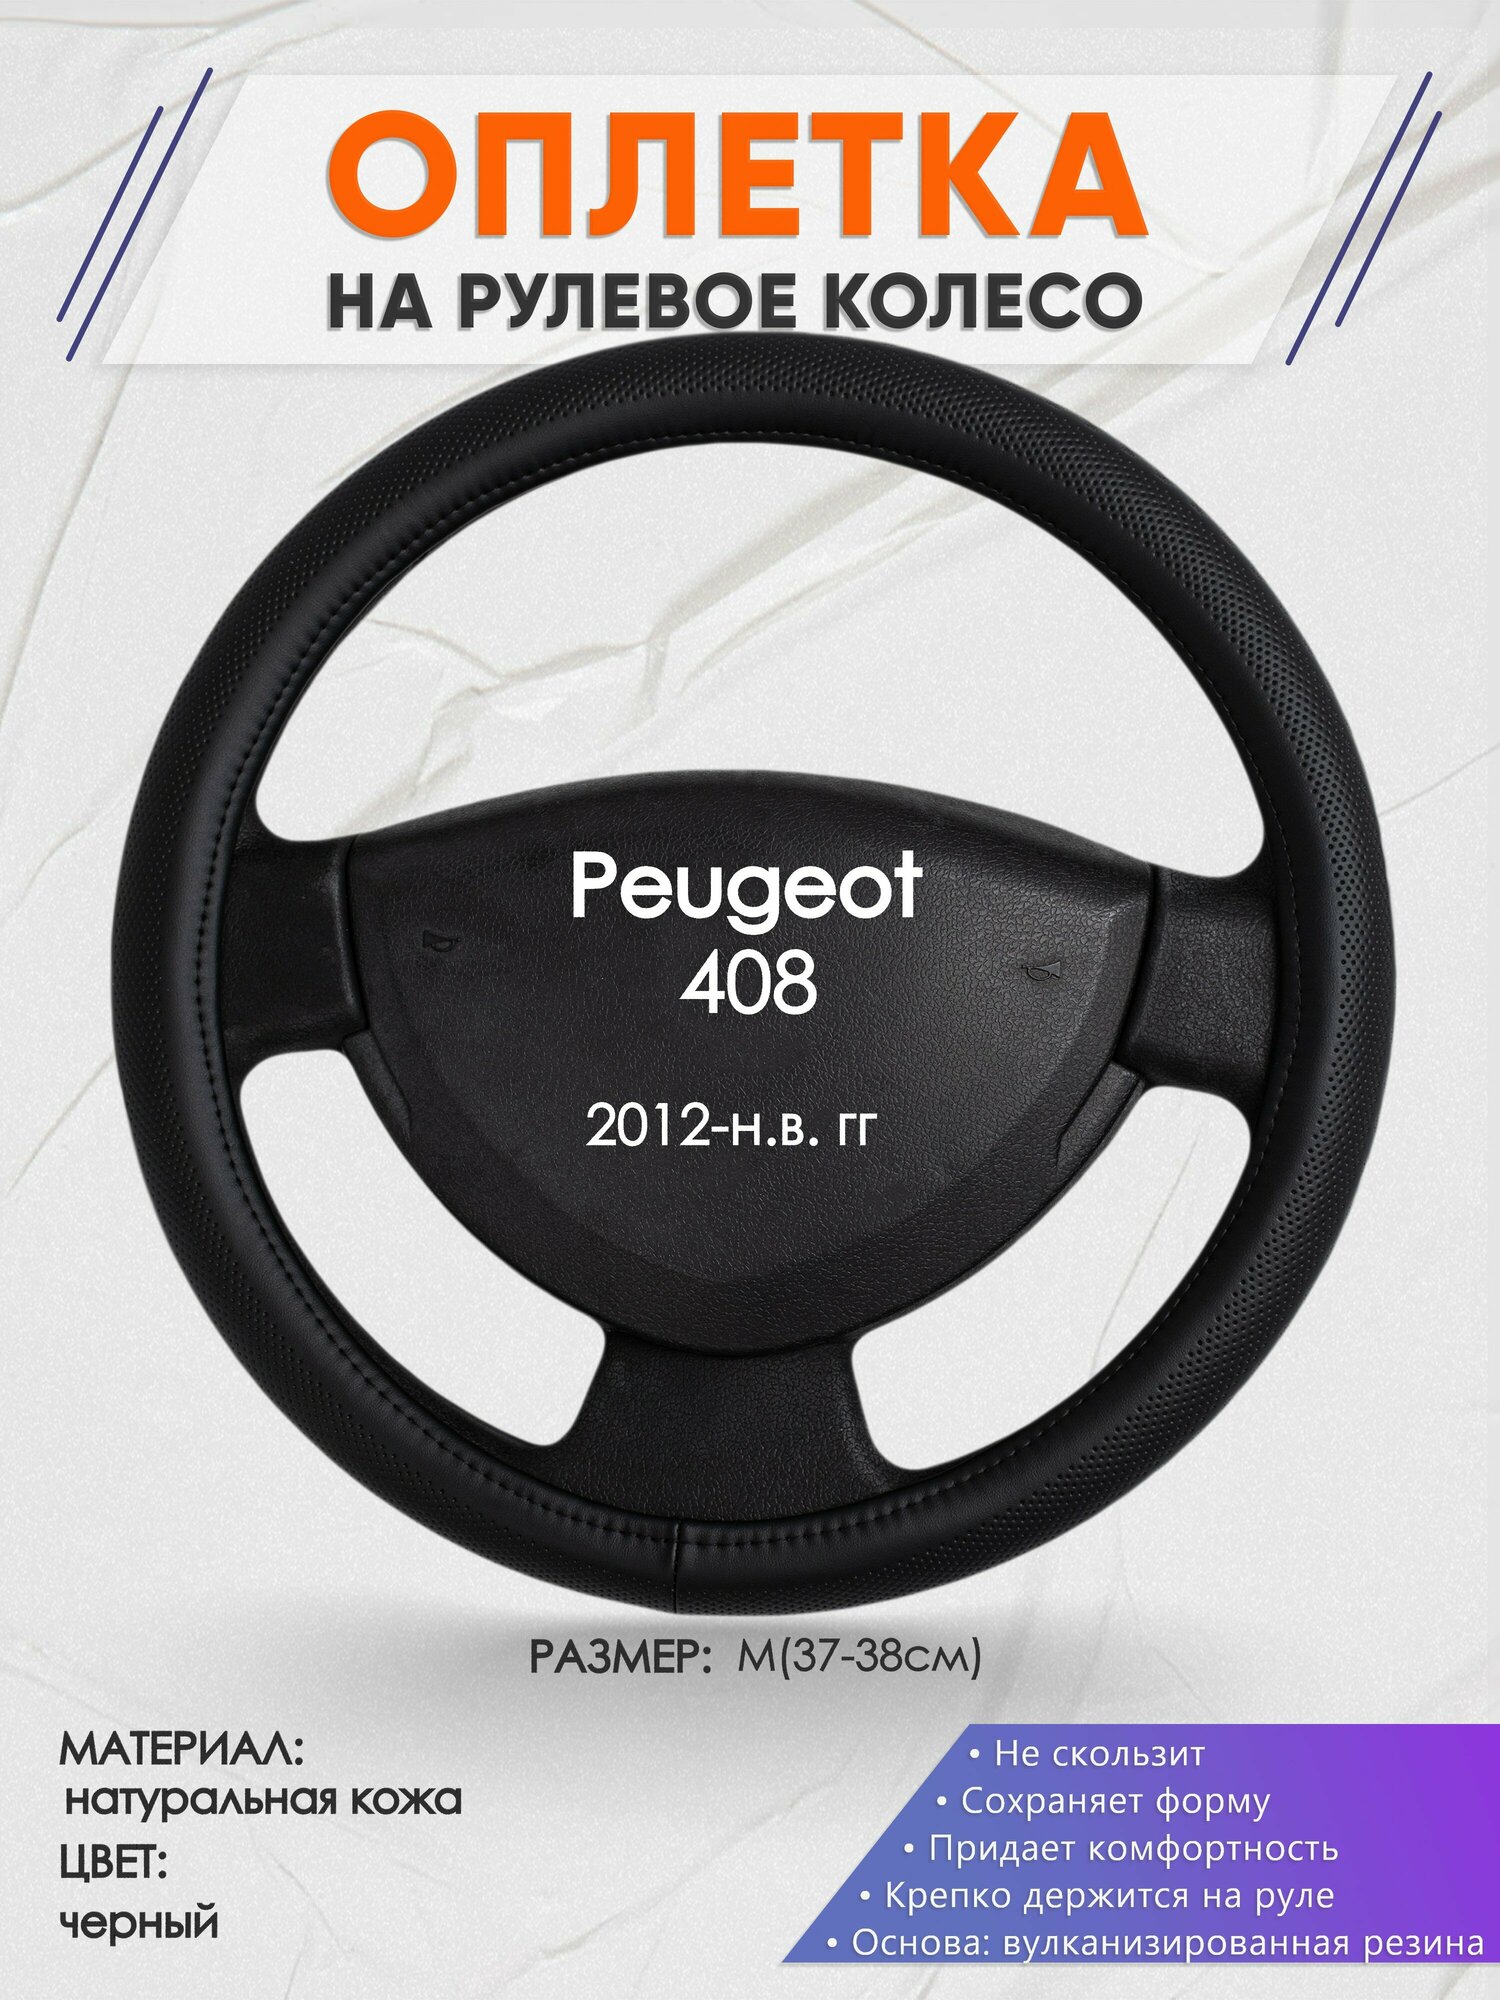 Оплетка на руль для Peugeot 408 (Пежо ) 2012-н. в M(37-38см) Натуральная кожа 91